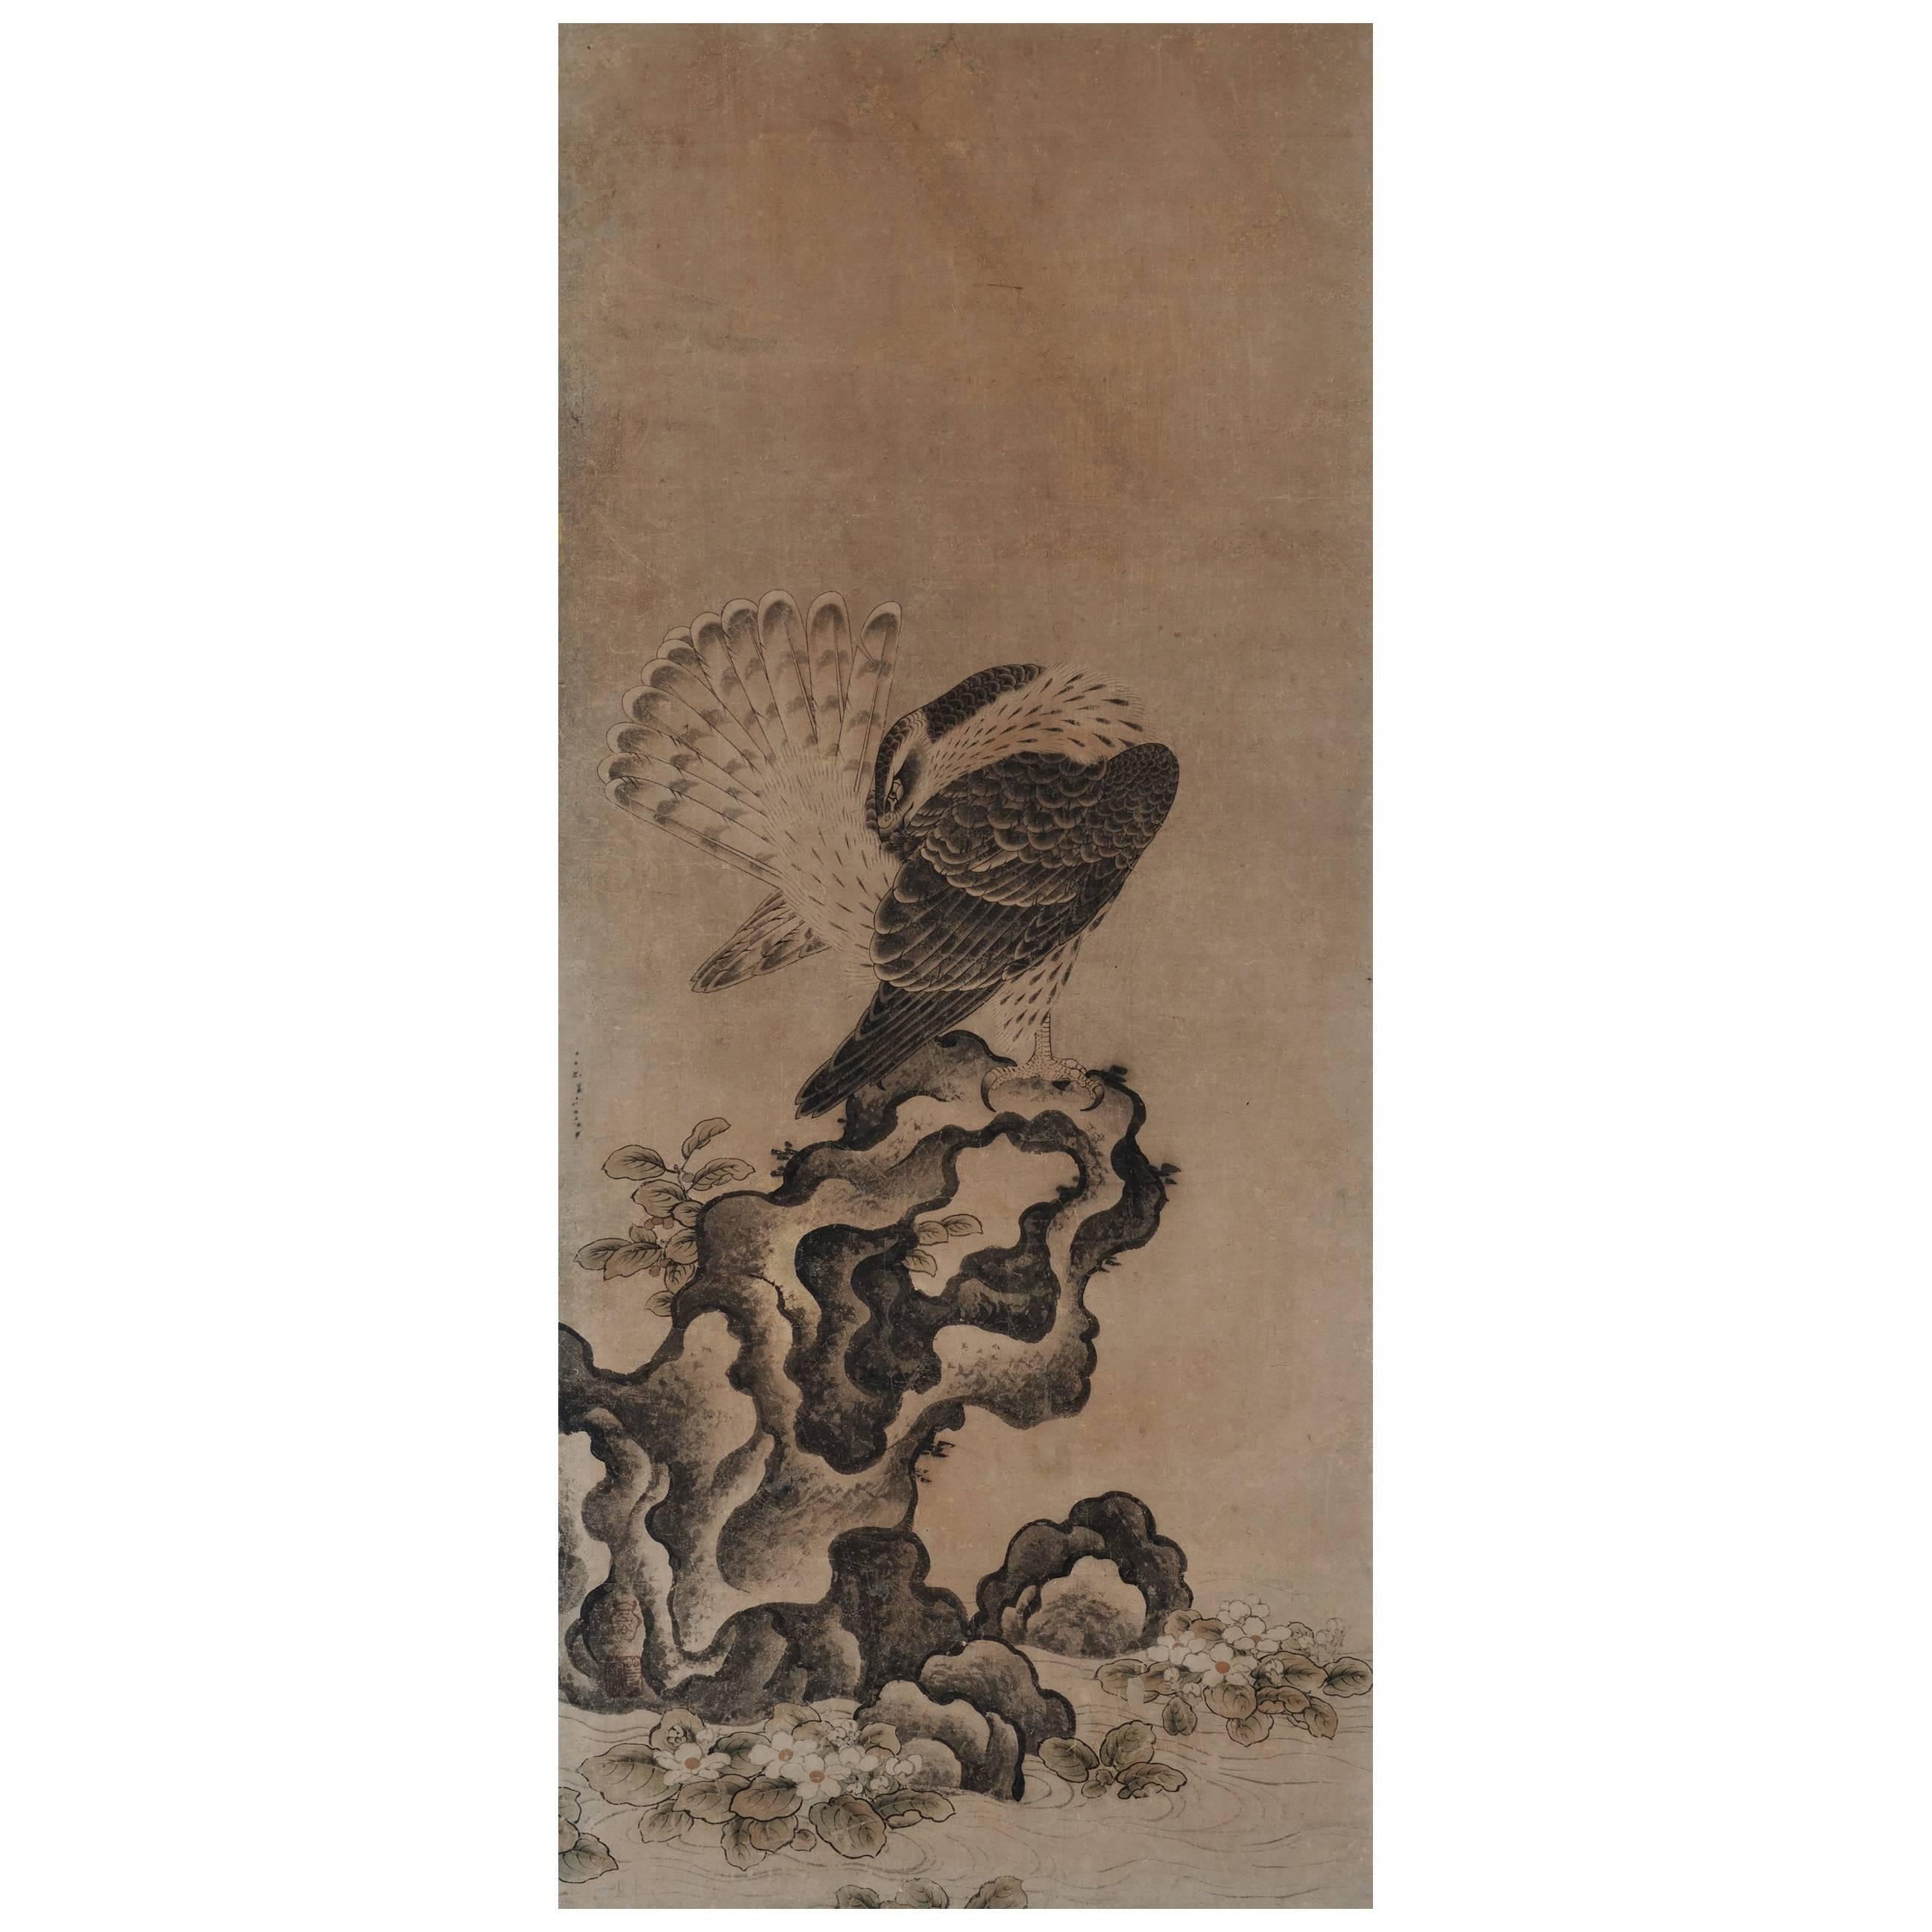 Japanisches Gemälde, gerahmte Tafel, Falcon aus dem 17. Jahrhundert von Mitani Toshuku